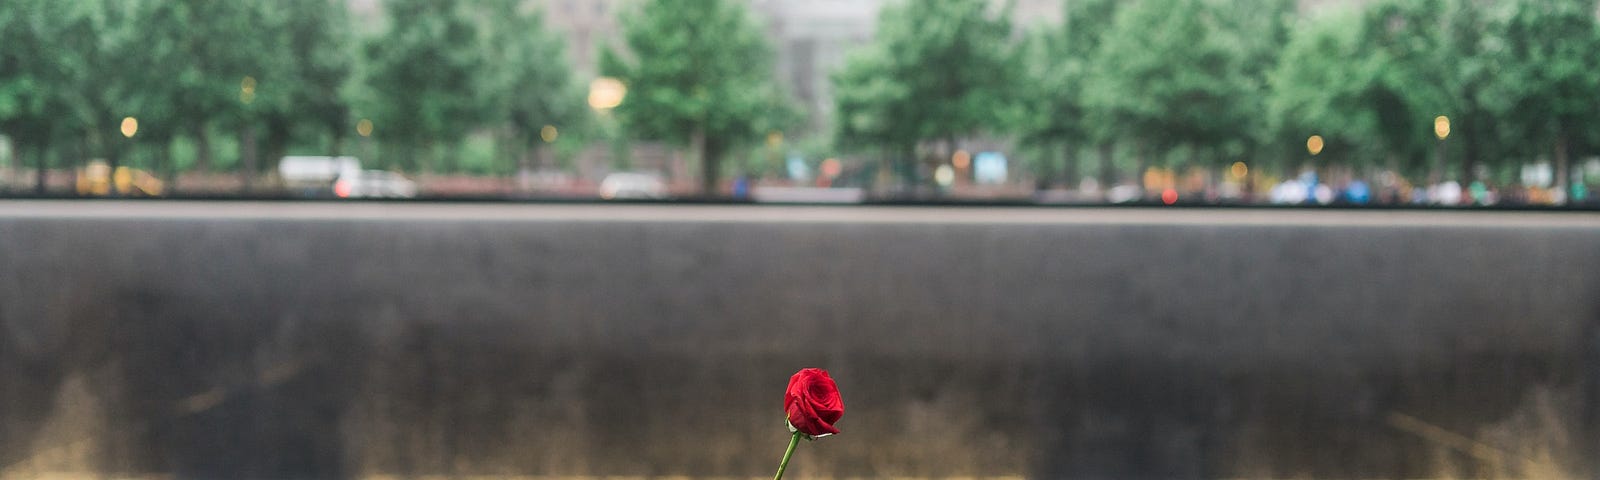 9/11 Memorial with names, 2996, September 11, never forget, World Trade Center, New York, Memorial, Casey Lane, caseylanewords, medium